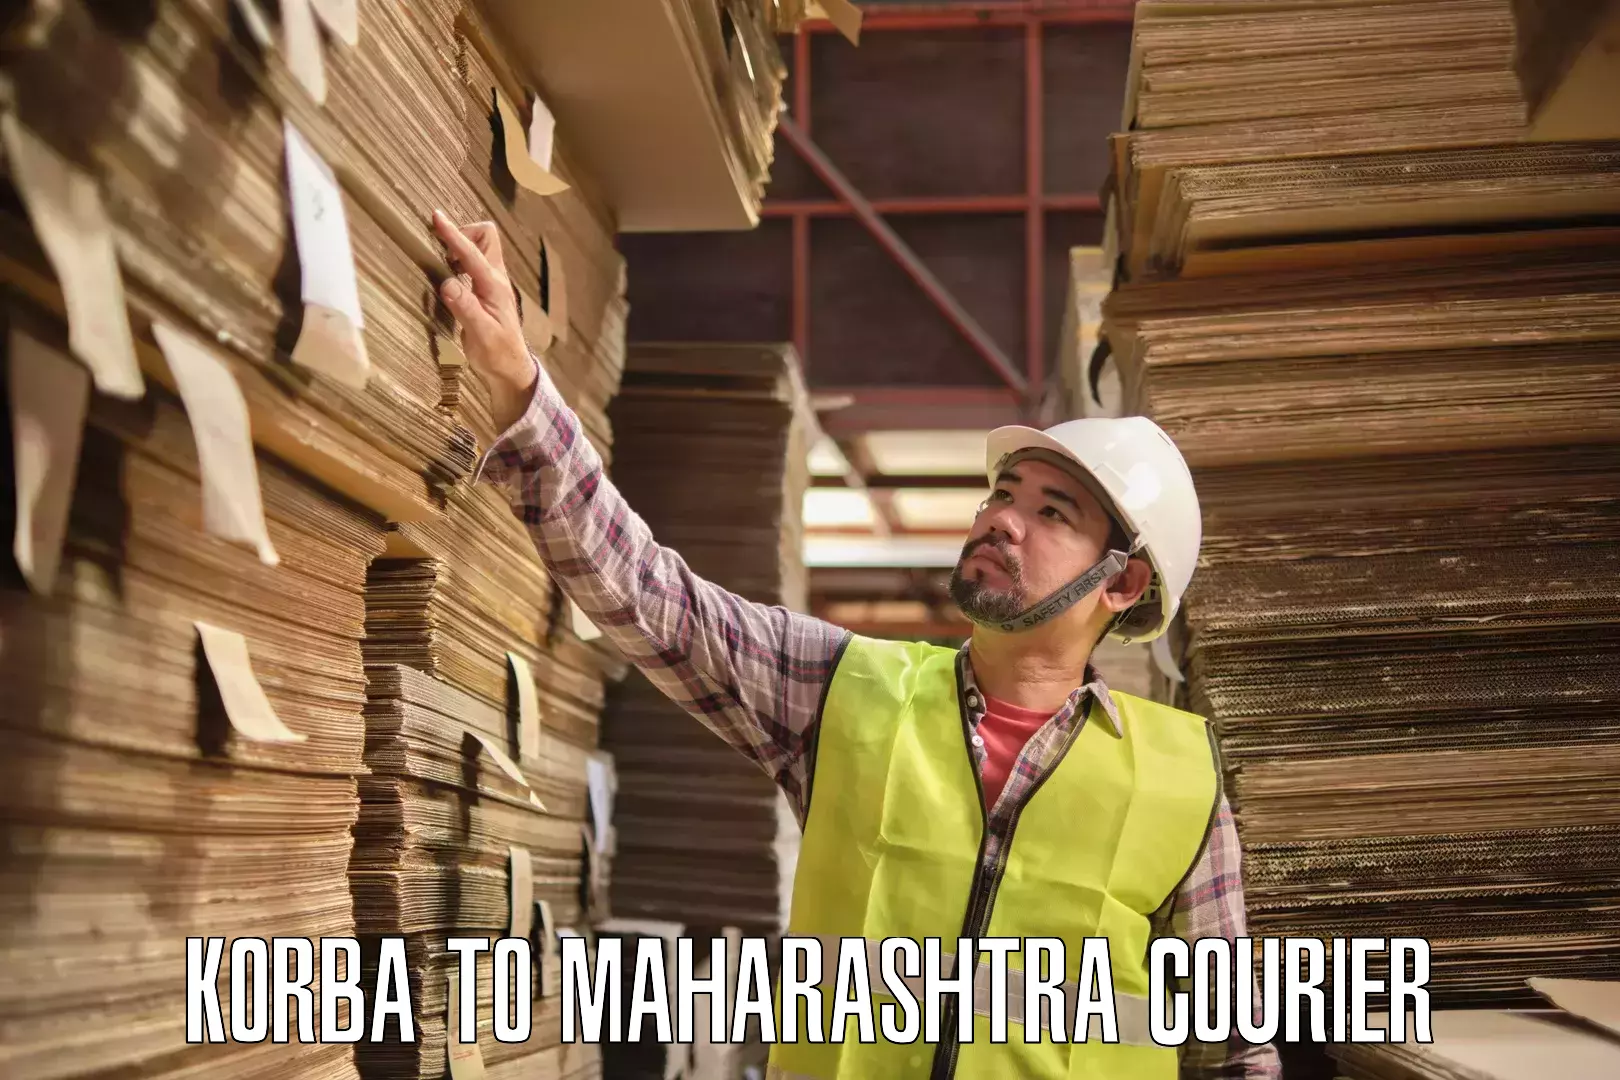 Fast shipping solutions Korba to Maharashtra